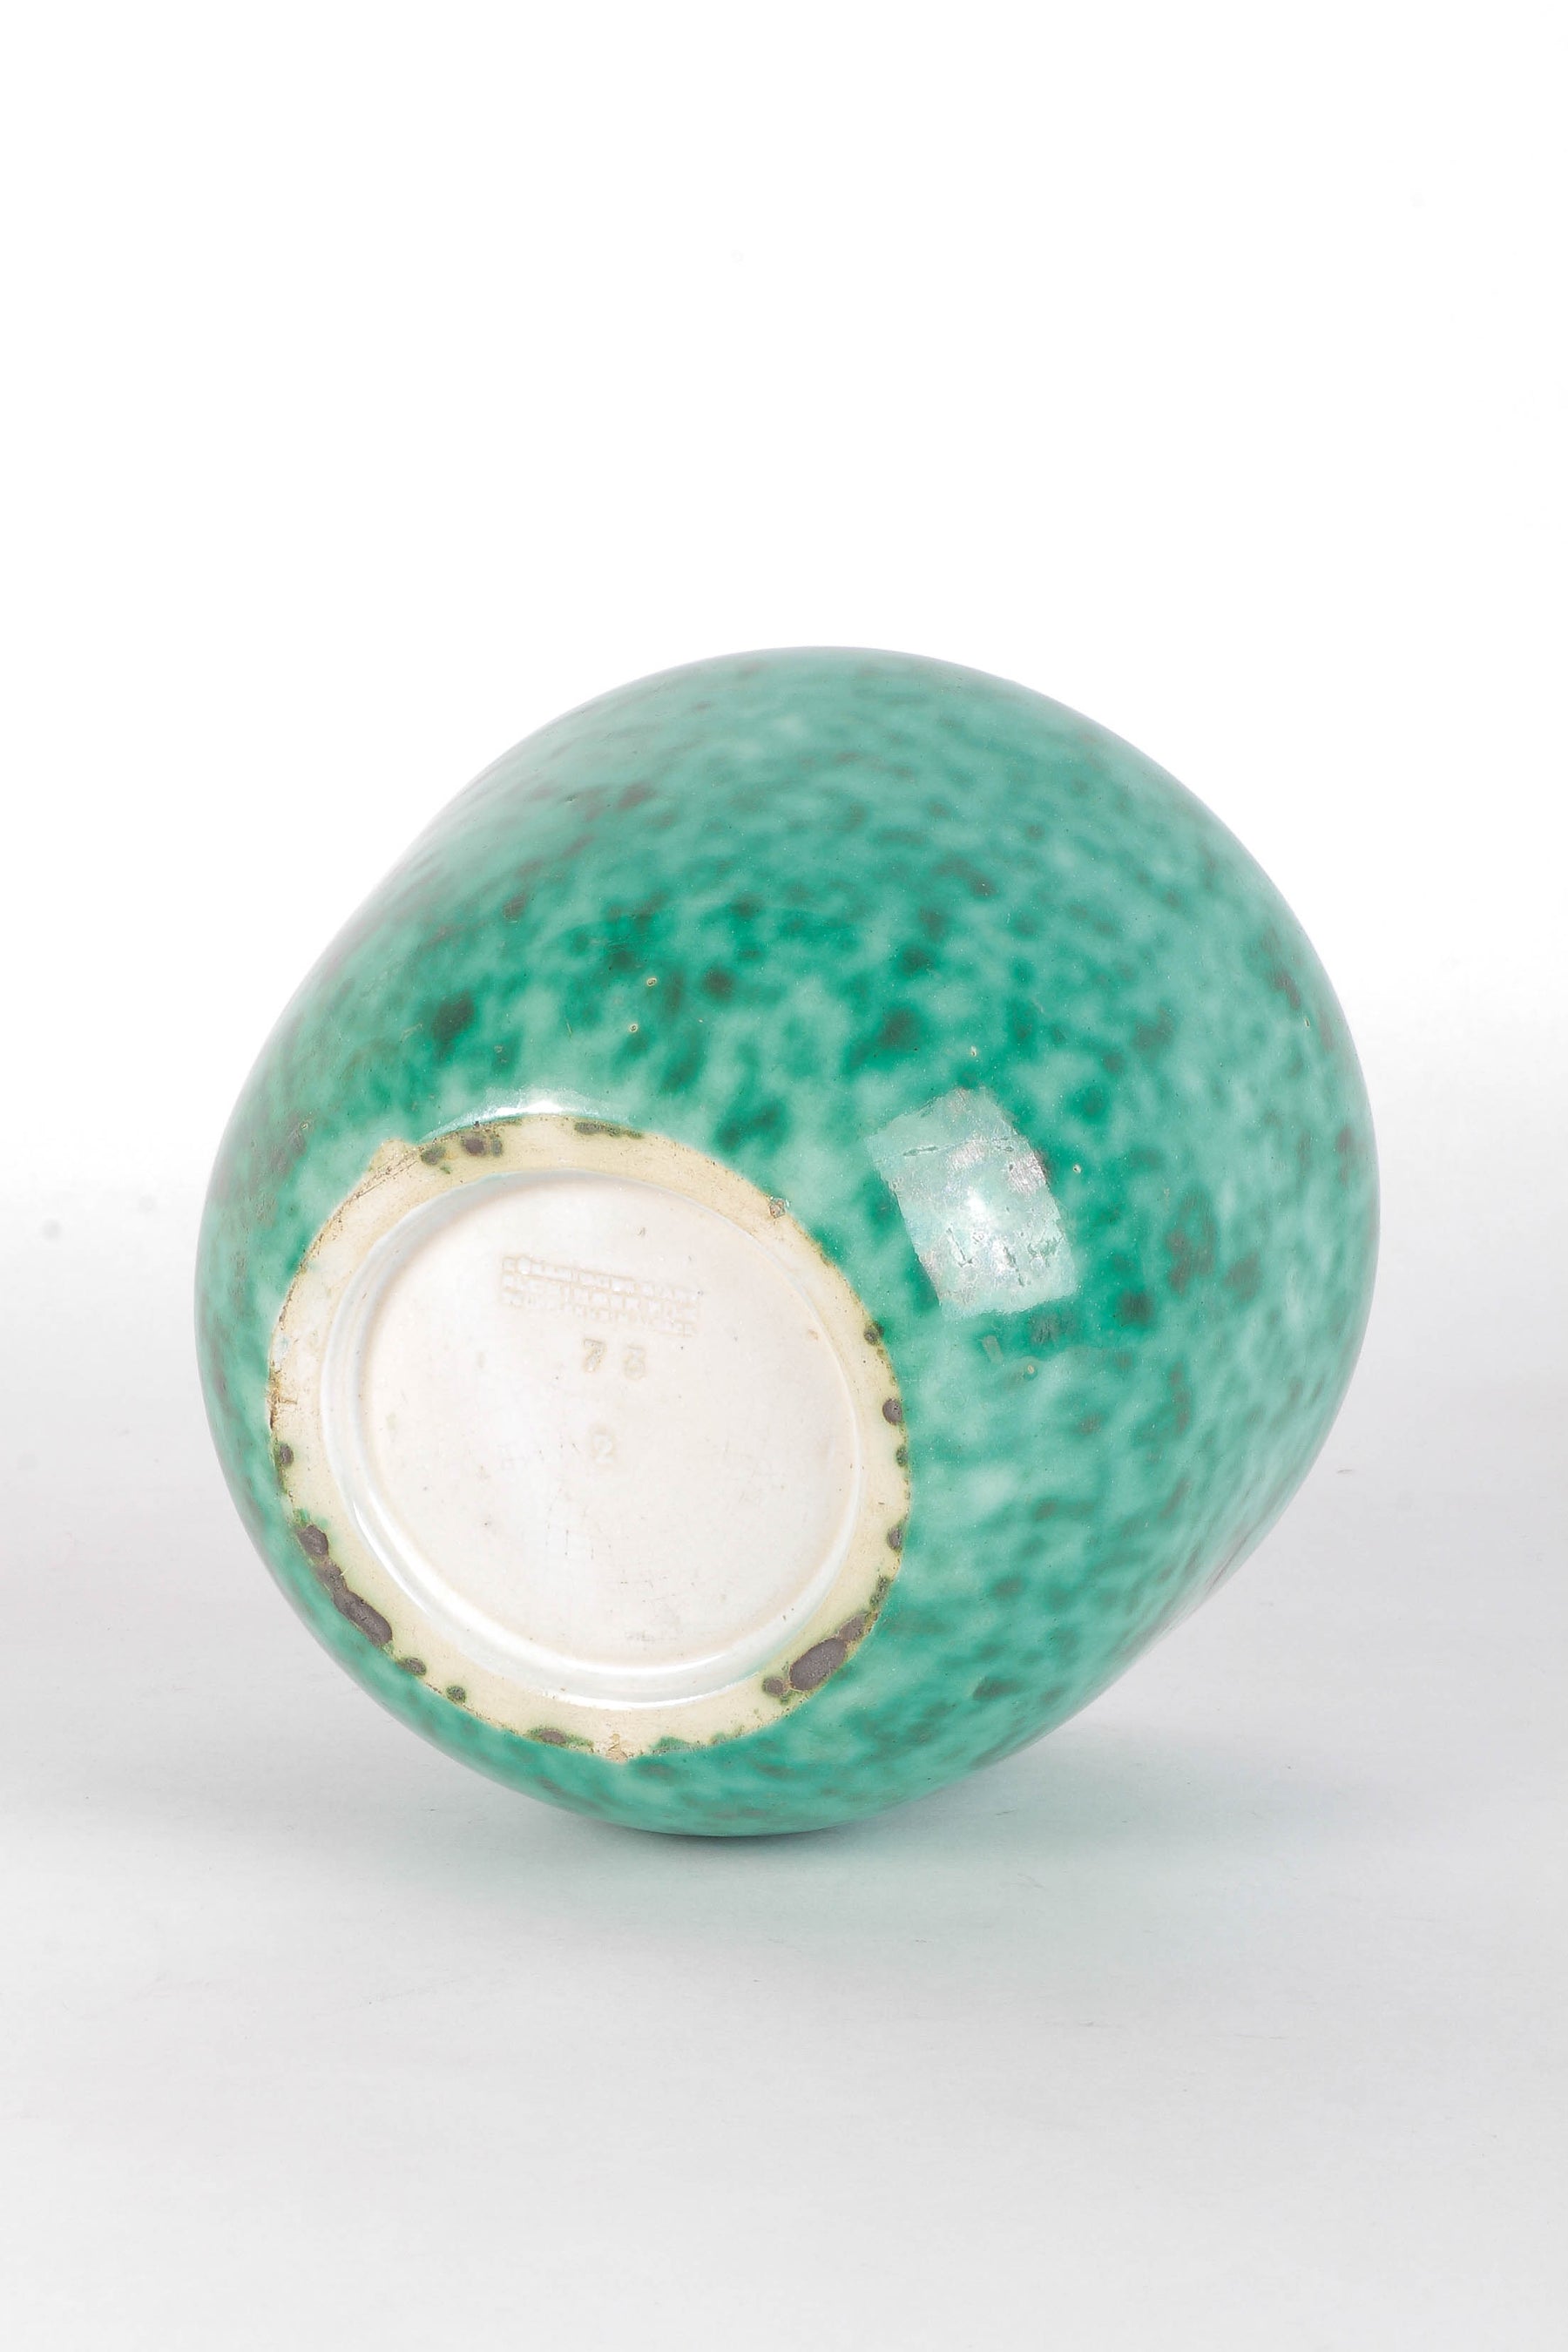 Turquoise Ceramic Vase, Elchinger, 60s